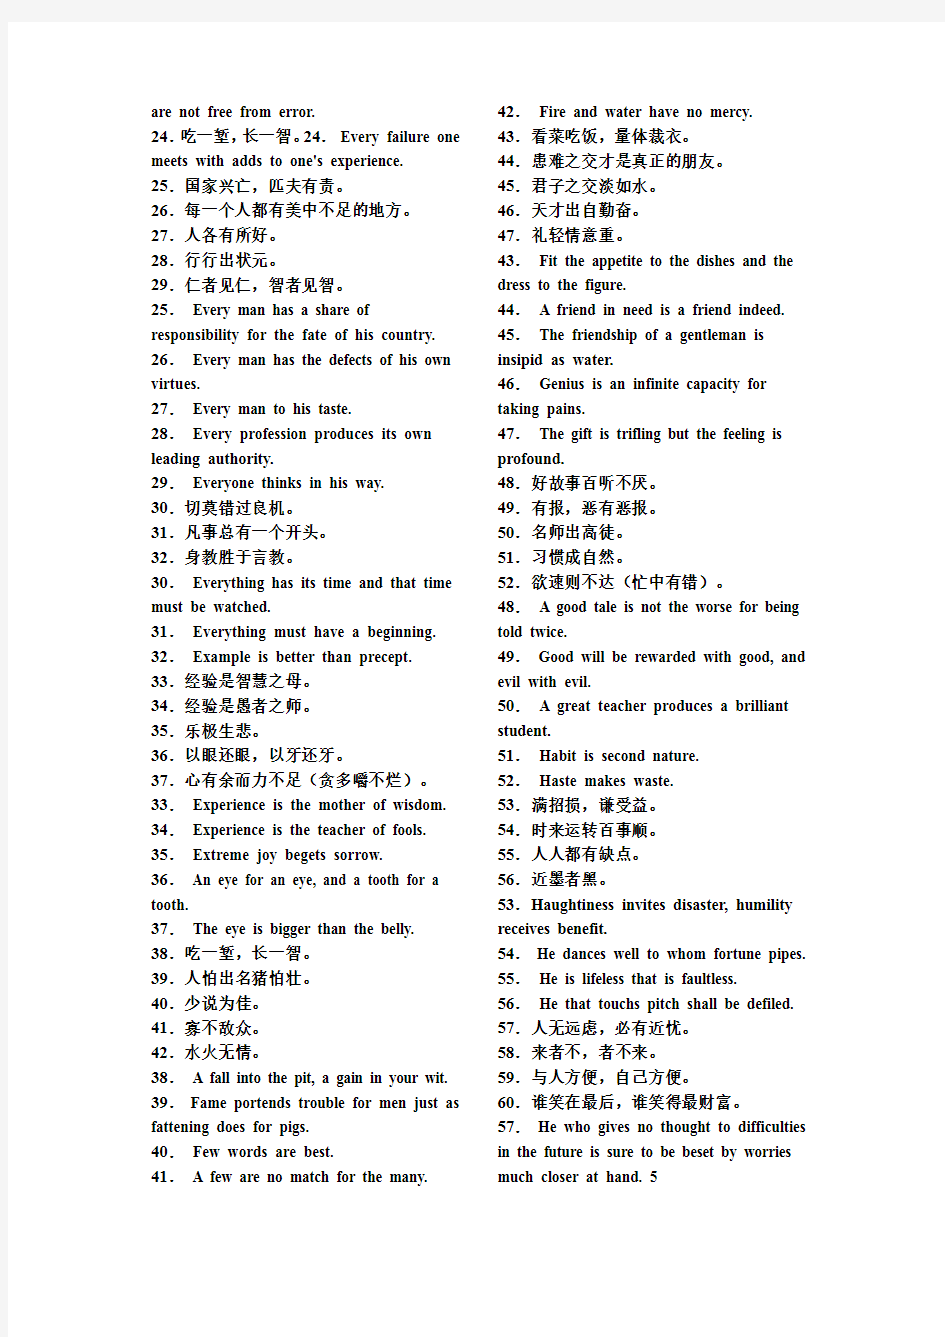 英语速学之中国谚语翻译总汇